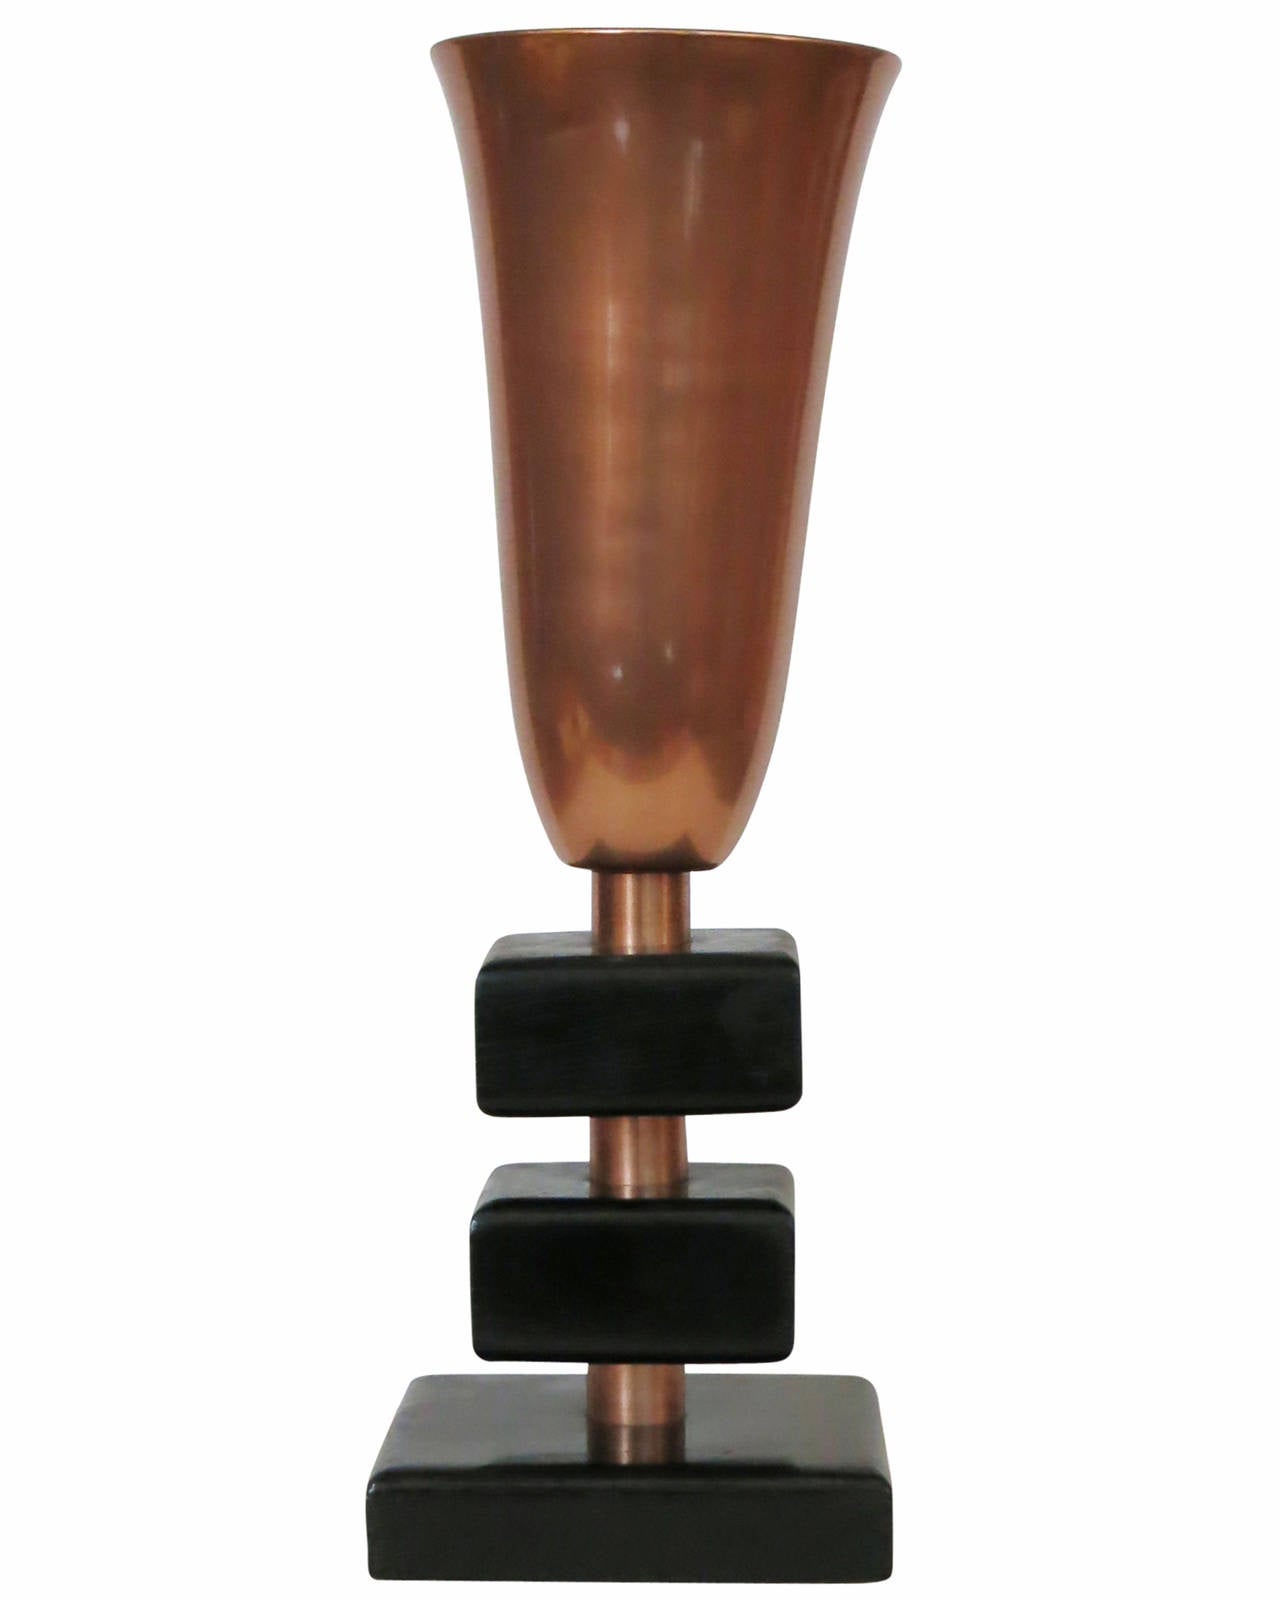 Lampe de table torchère en cuivre de la fin des années 1940, dotée d'un abat-jour torchère élancé en cuivre et d'une base empilée en bois laqué avec des liens décoratifs en cuivre. 

Cette lampe est un excellent exemple du design du milieu du